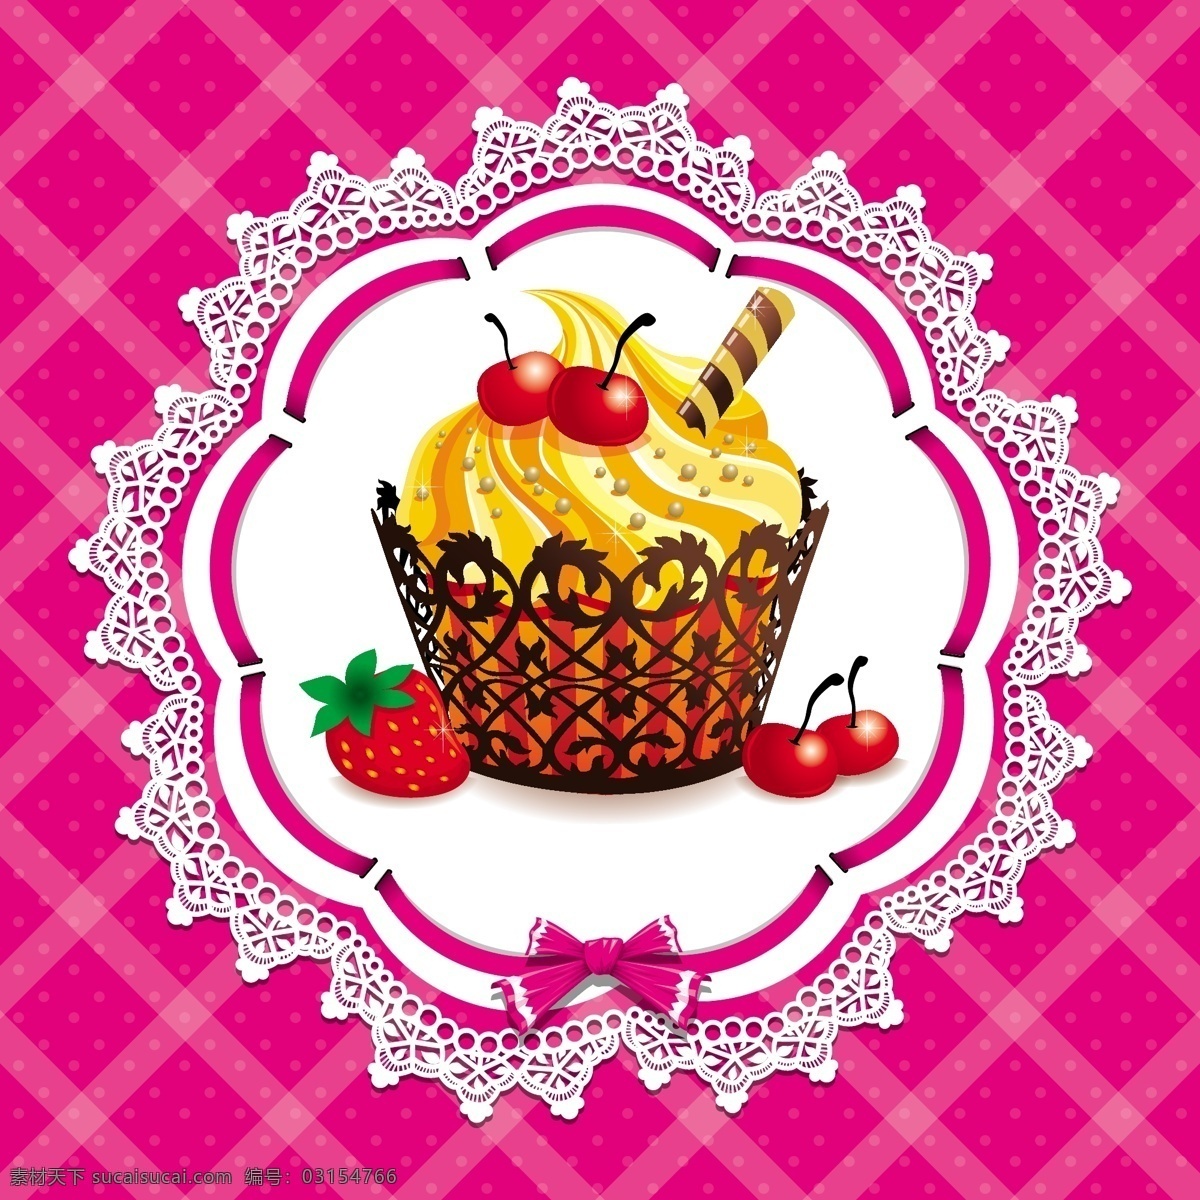 甜品 蛋糕 矢量 广告 背景 卡通 手绘 甜品蛋糕 童趣 西式餐桌 西式甜品 紫红色